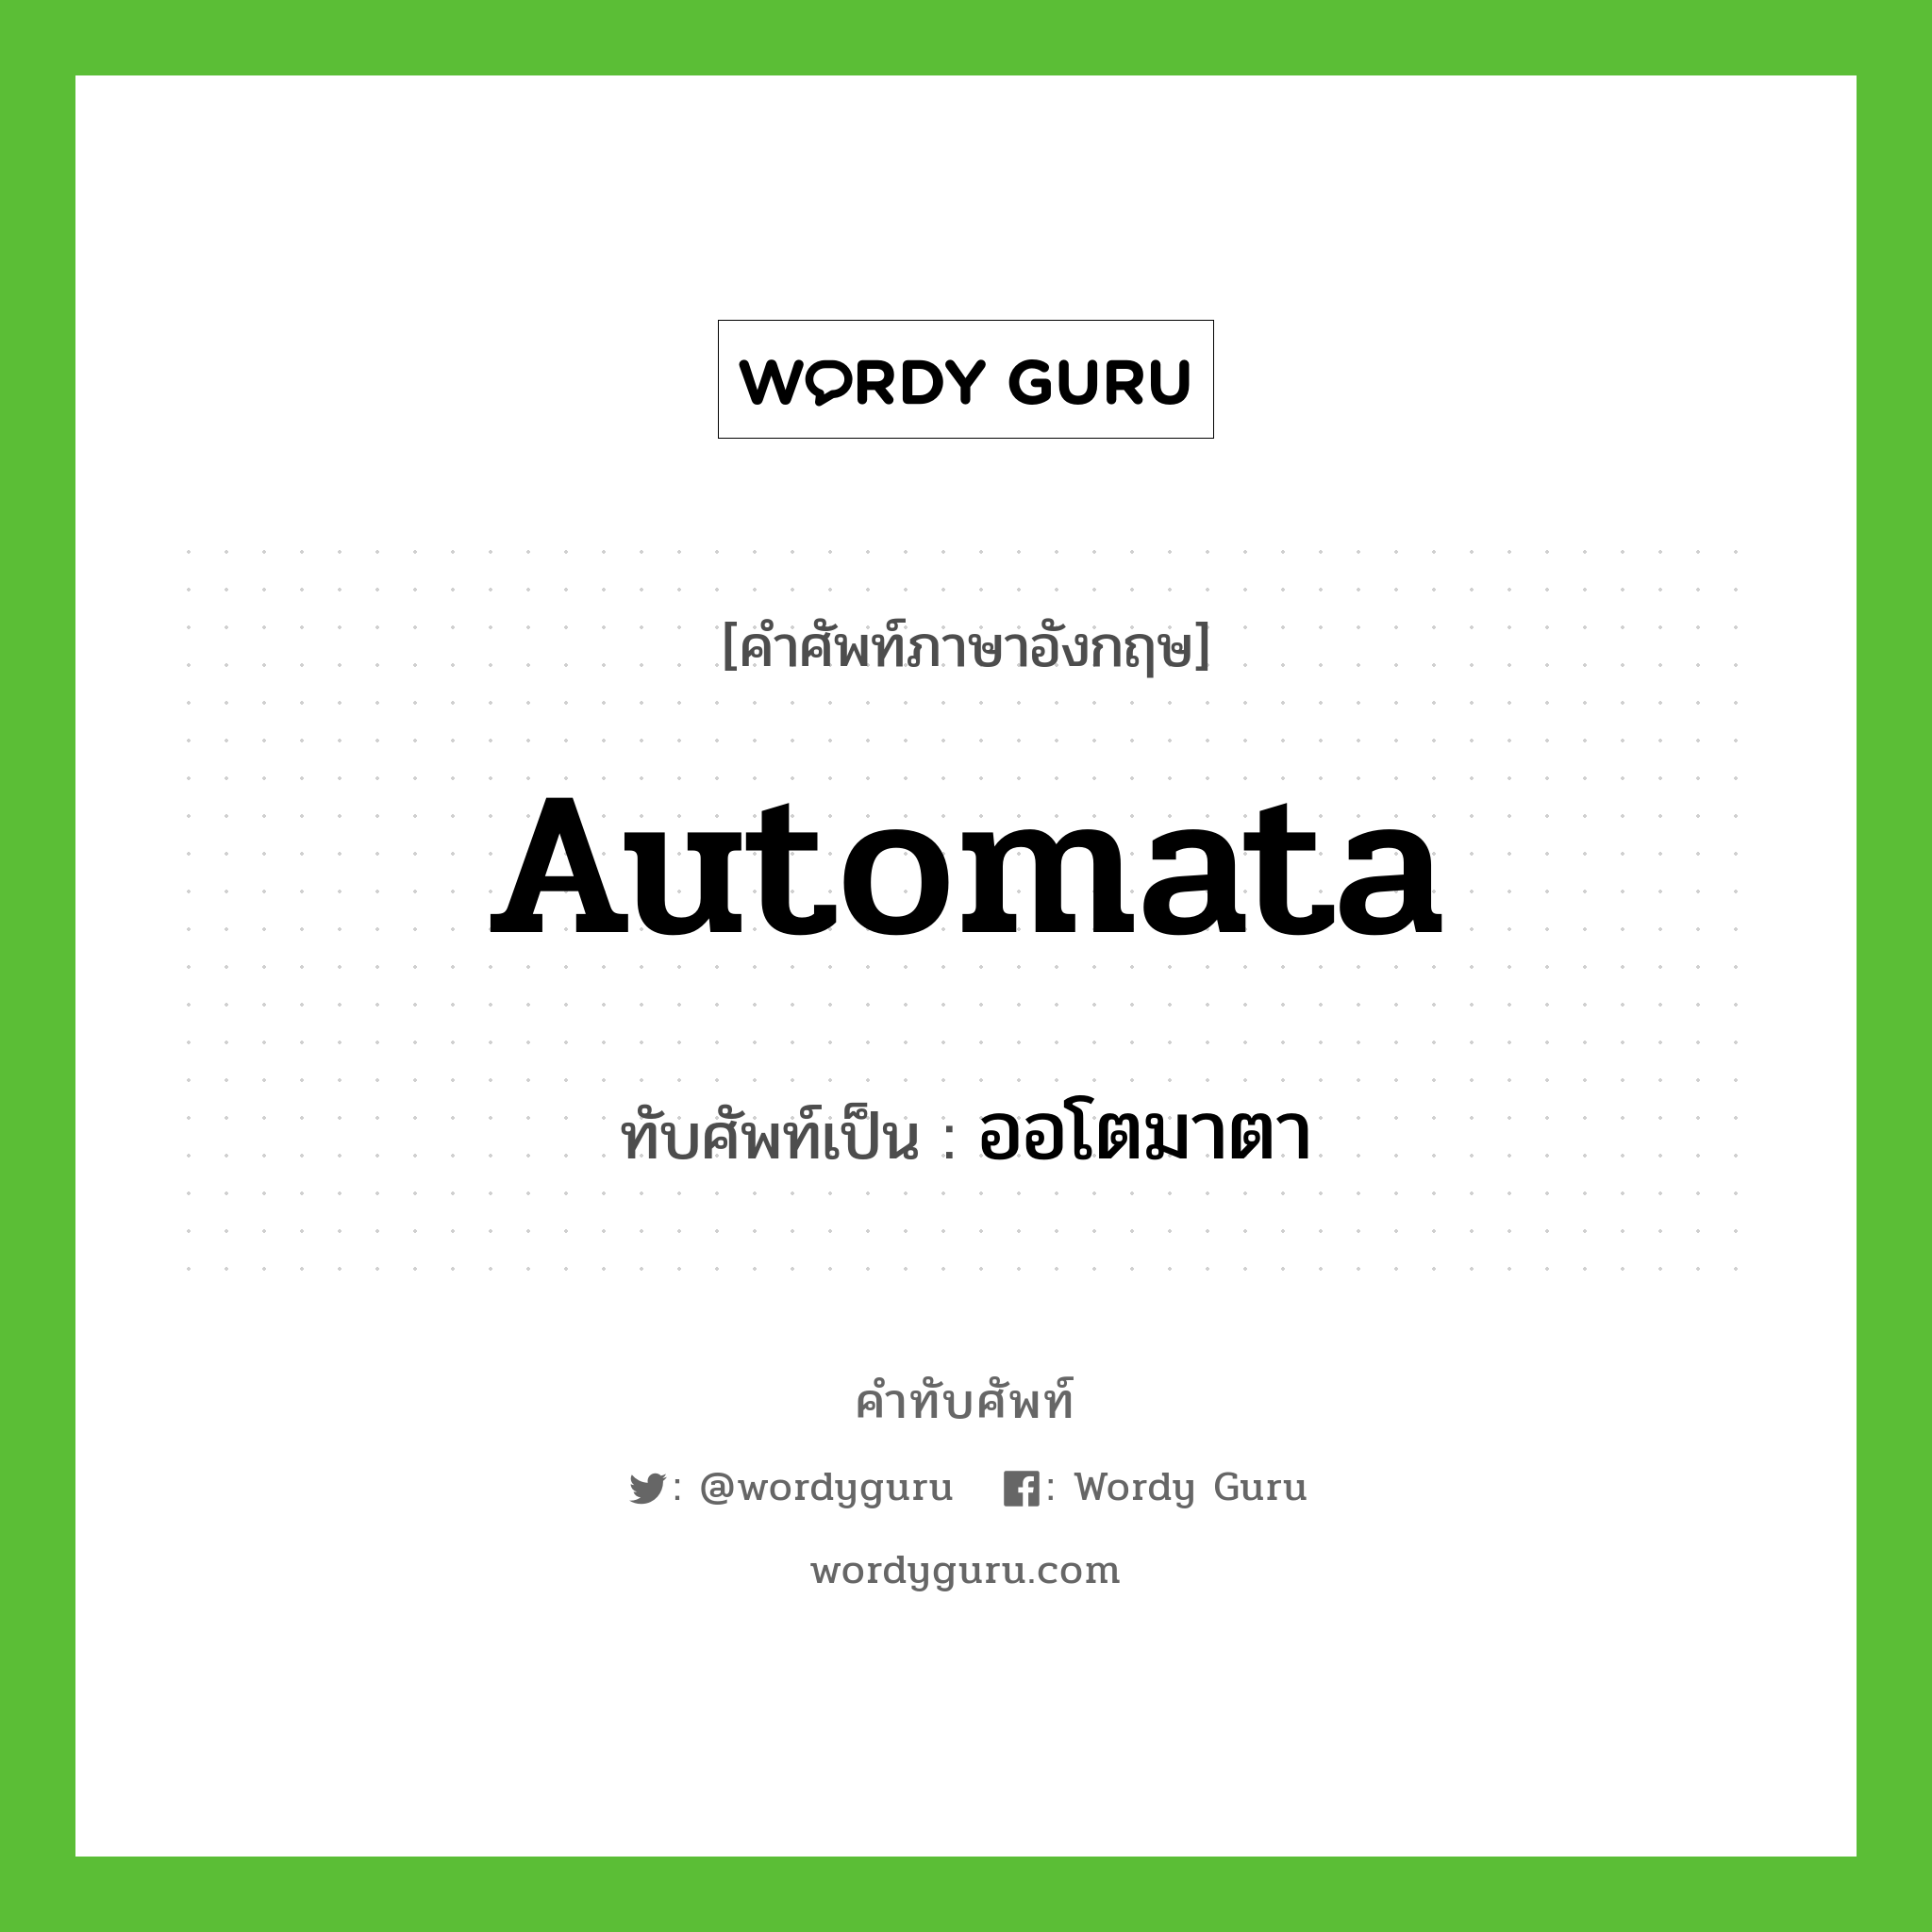 automata เขียนเป็นคำไทยว่าอะไร?, คำศัพท์ภาษาอังกฤษ automata ทับศัพท์เป็น ออโตมาตา